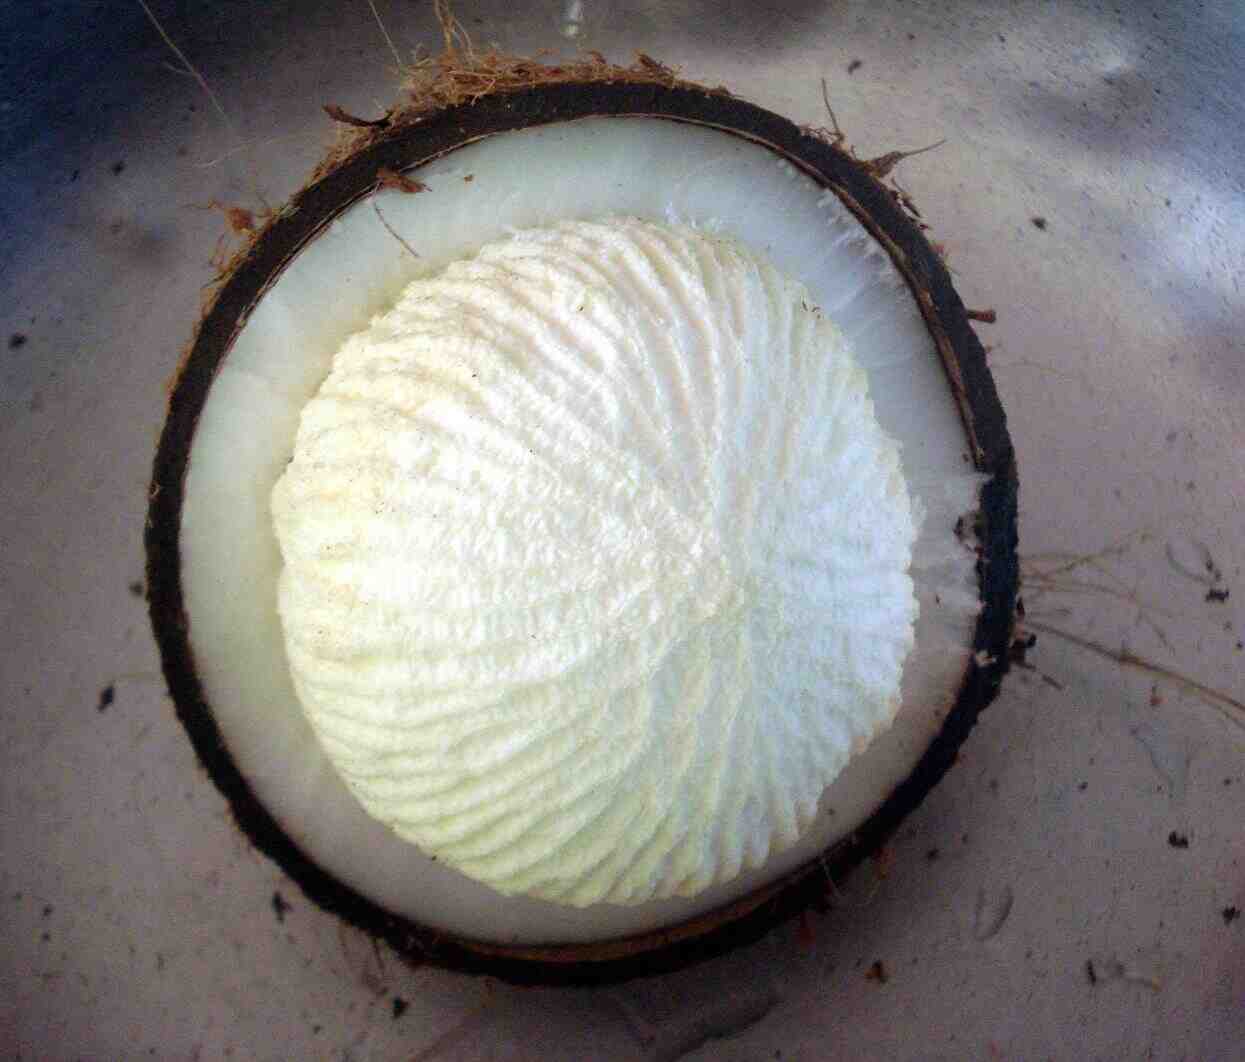 How do you get inside a coconut?